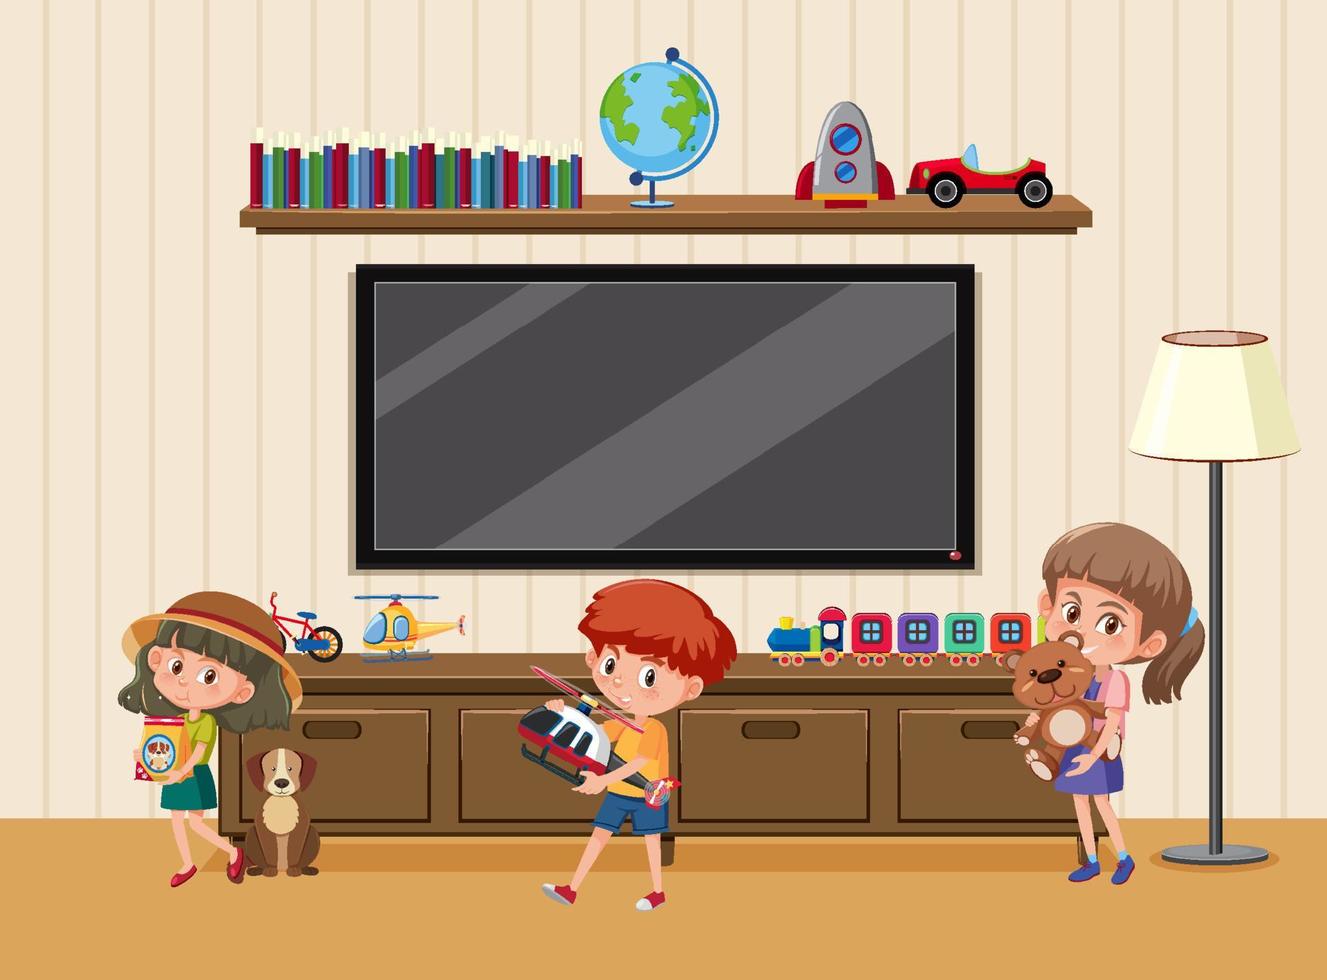 Living room scene with children cartoon character vector